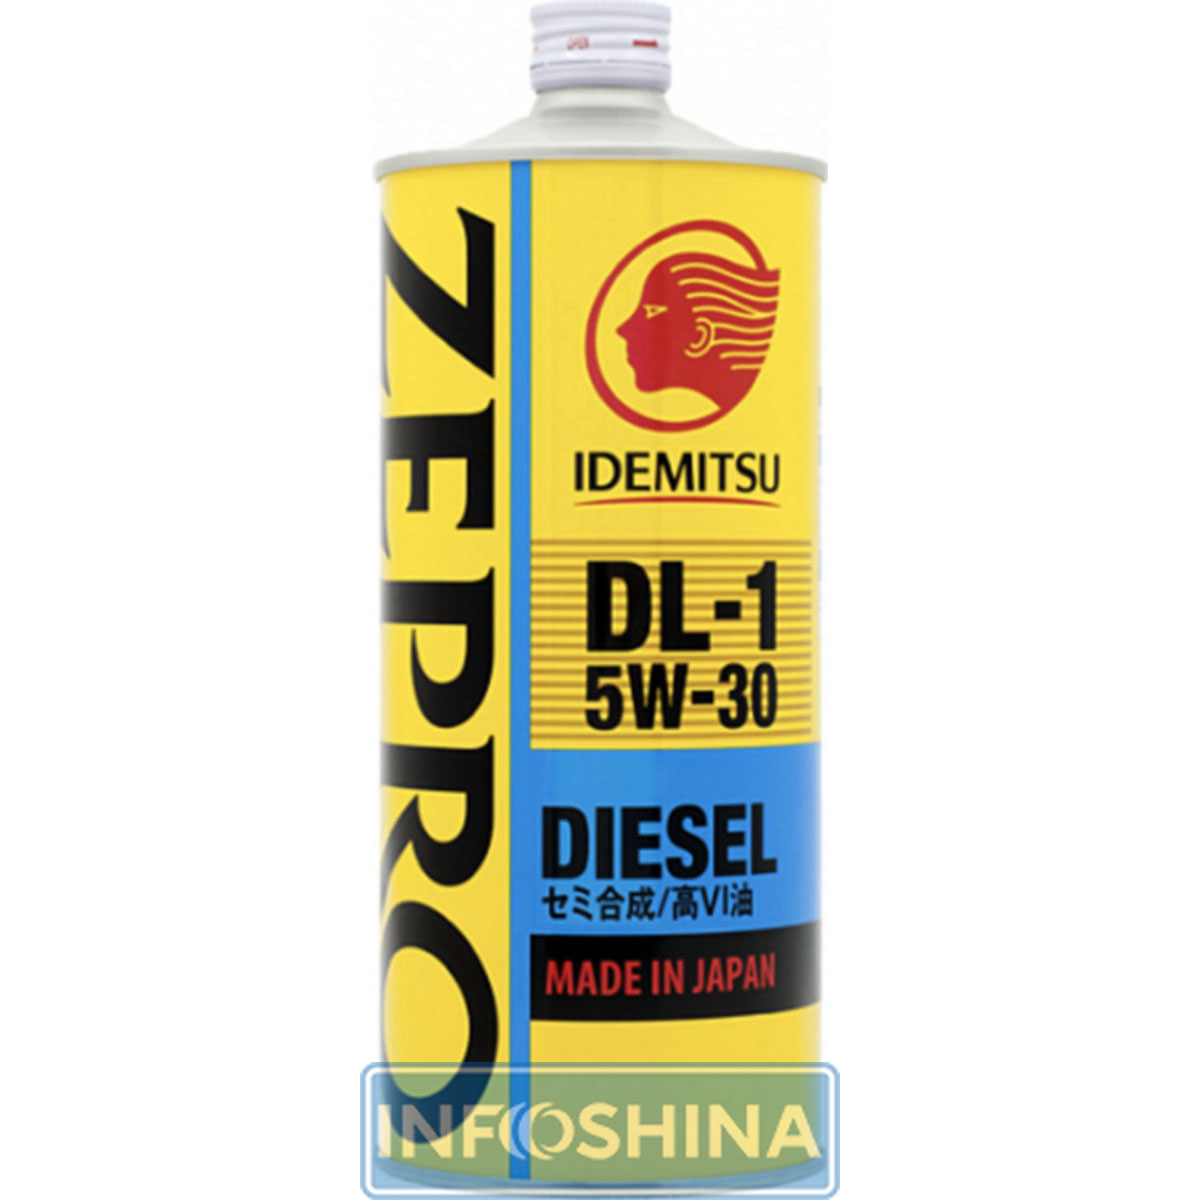 IDEMITSU Zepro Diesel DL -1 5W-30